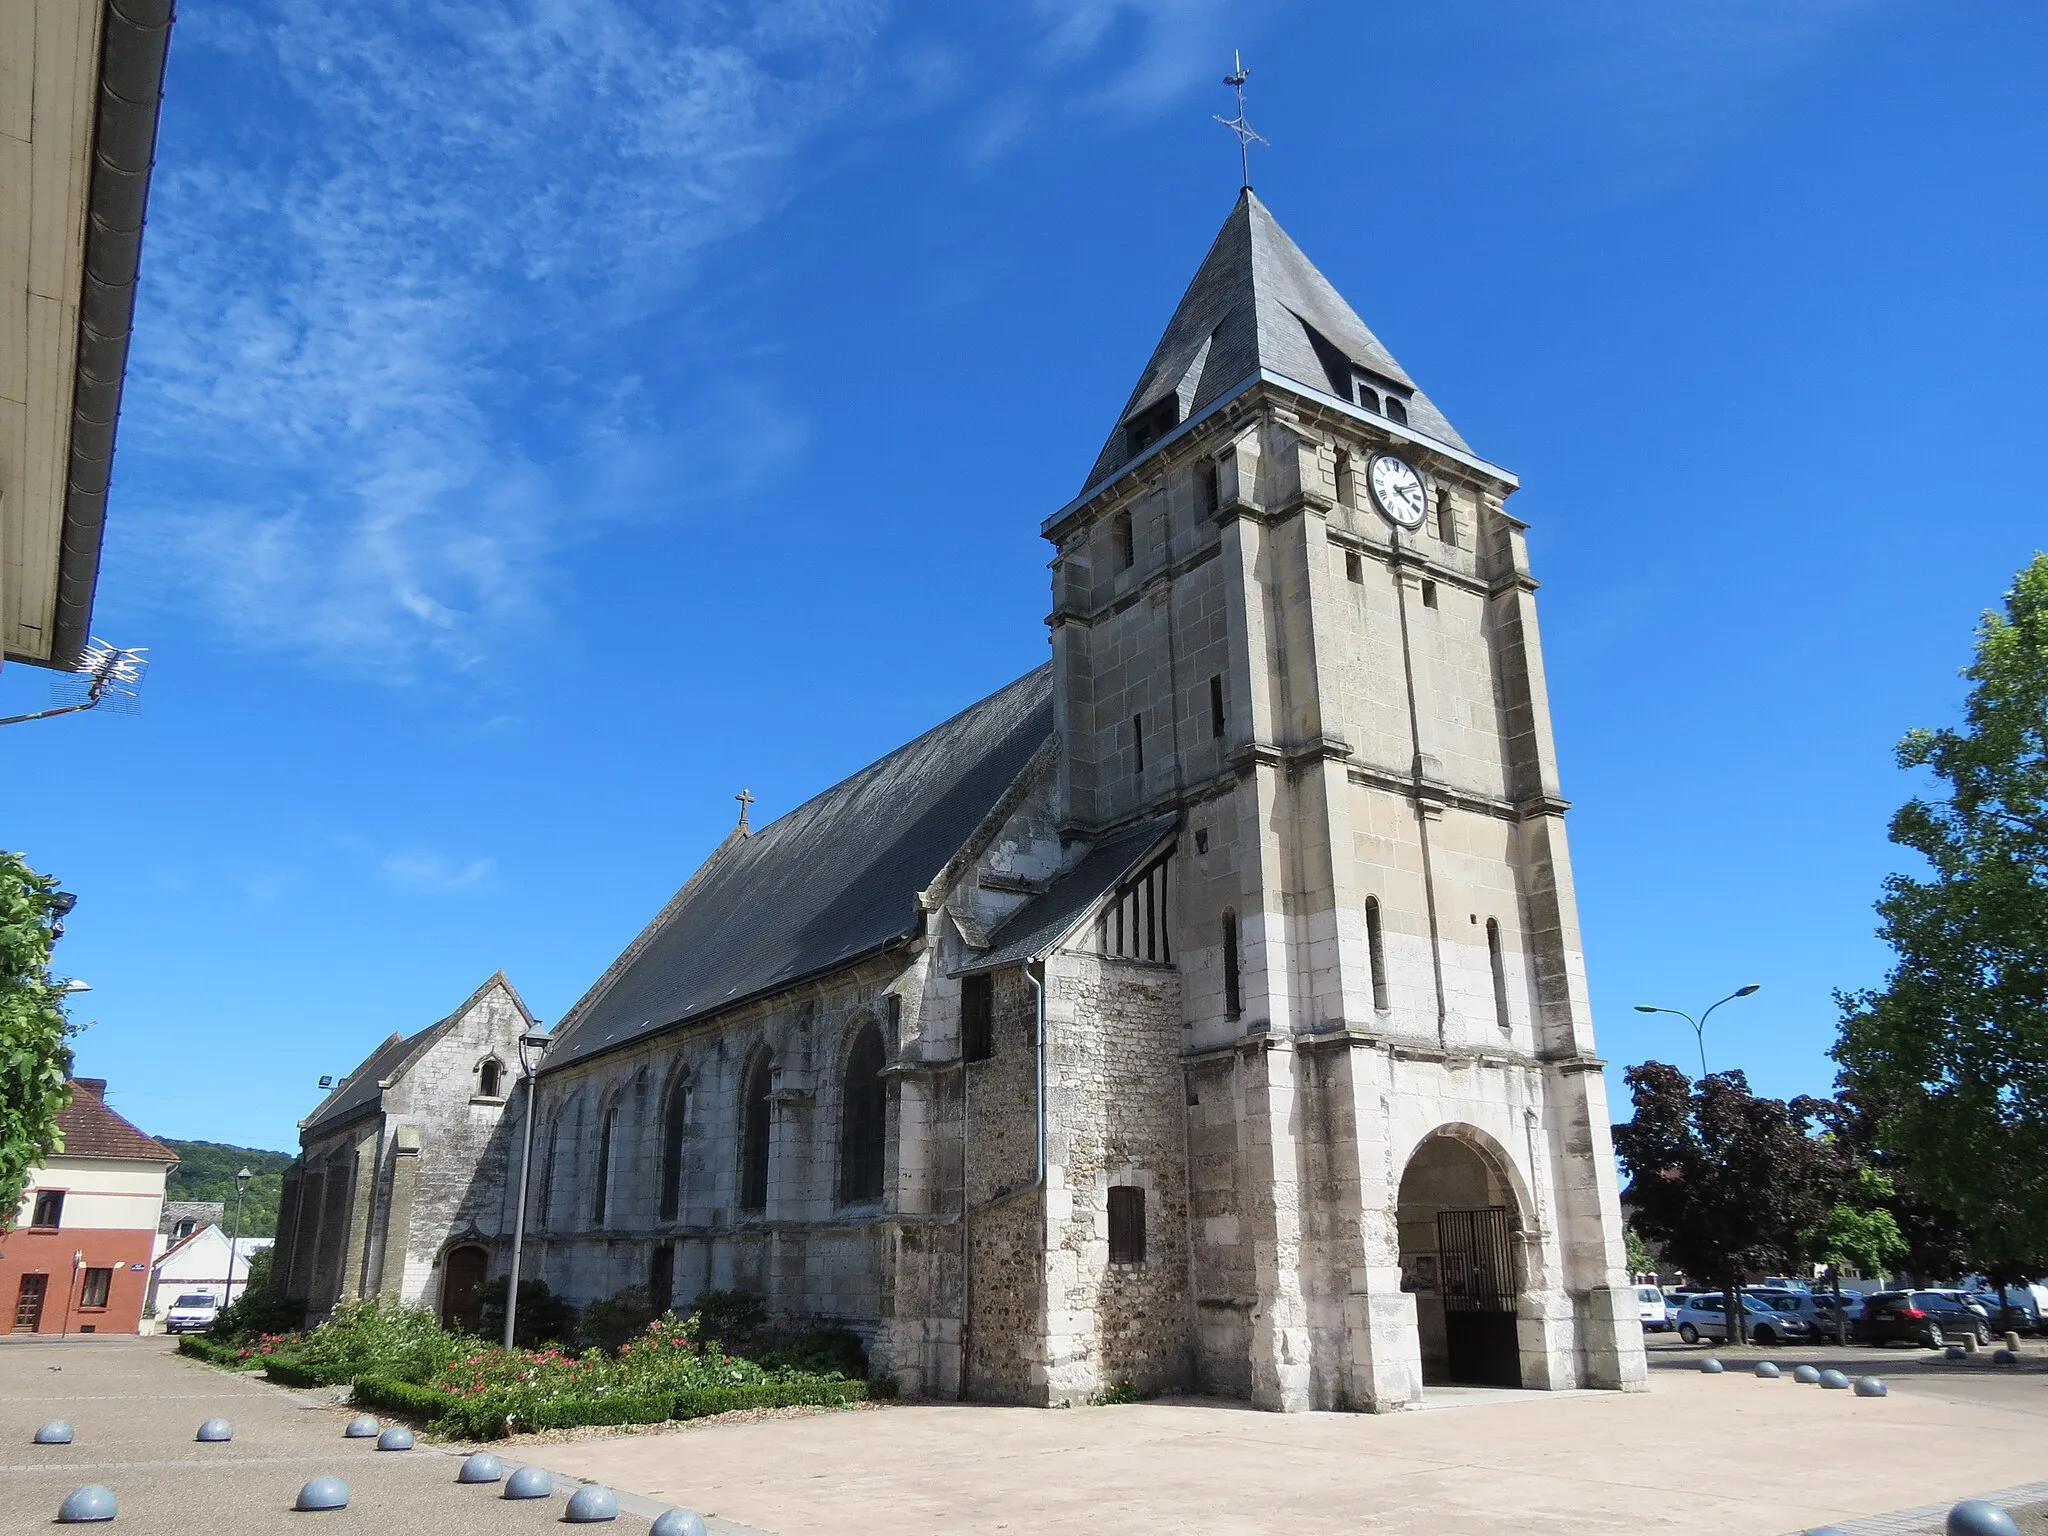 Image de Haute-Normandie